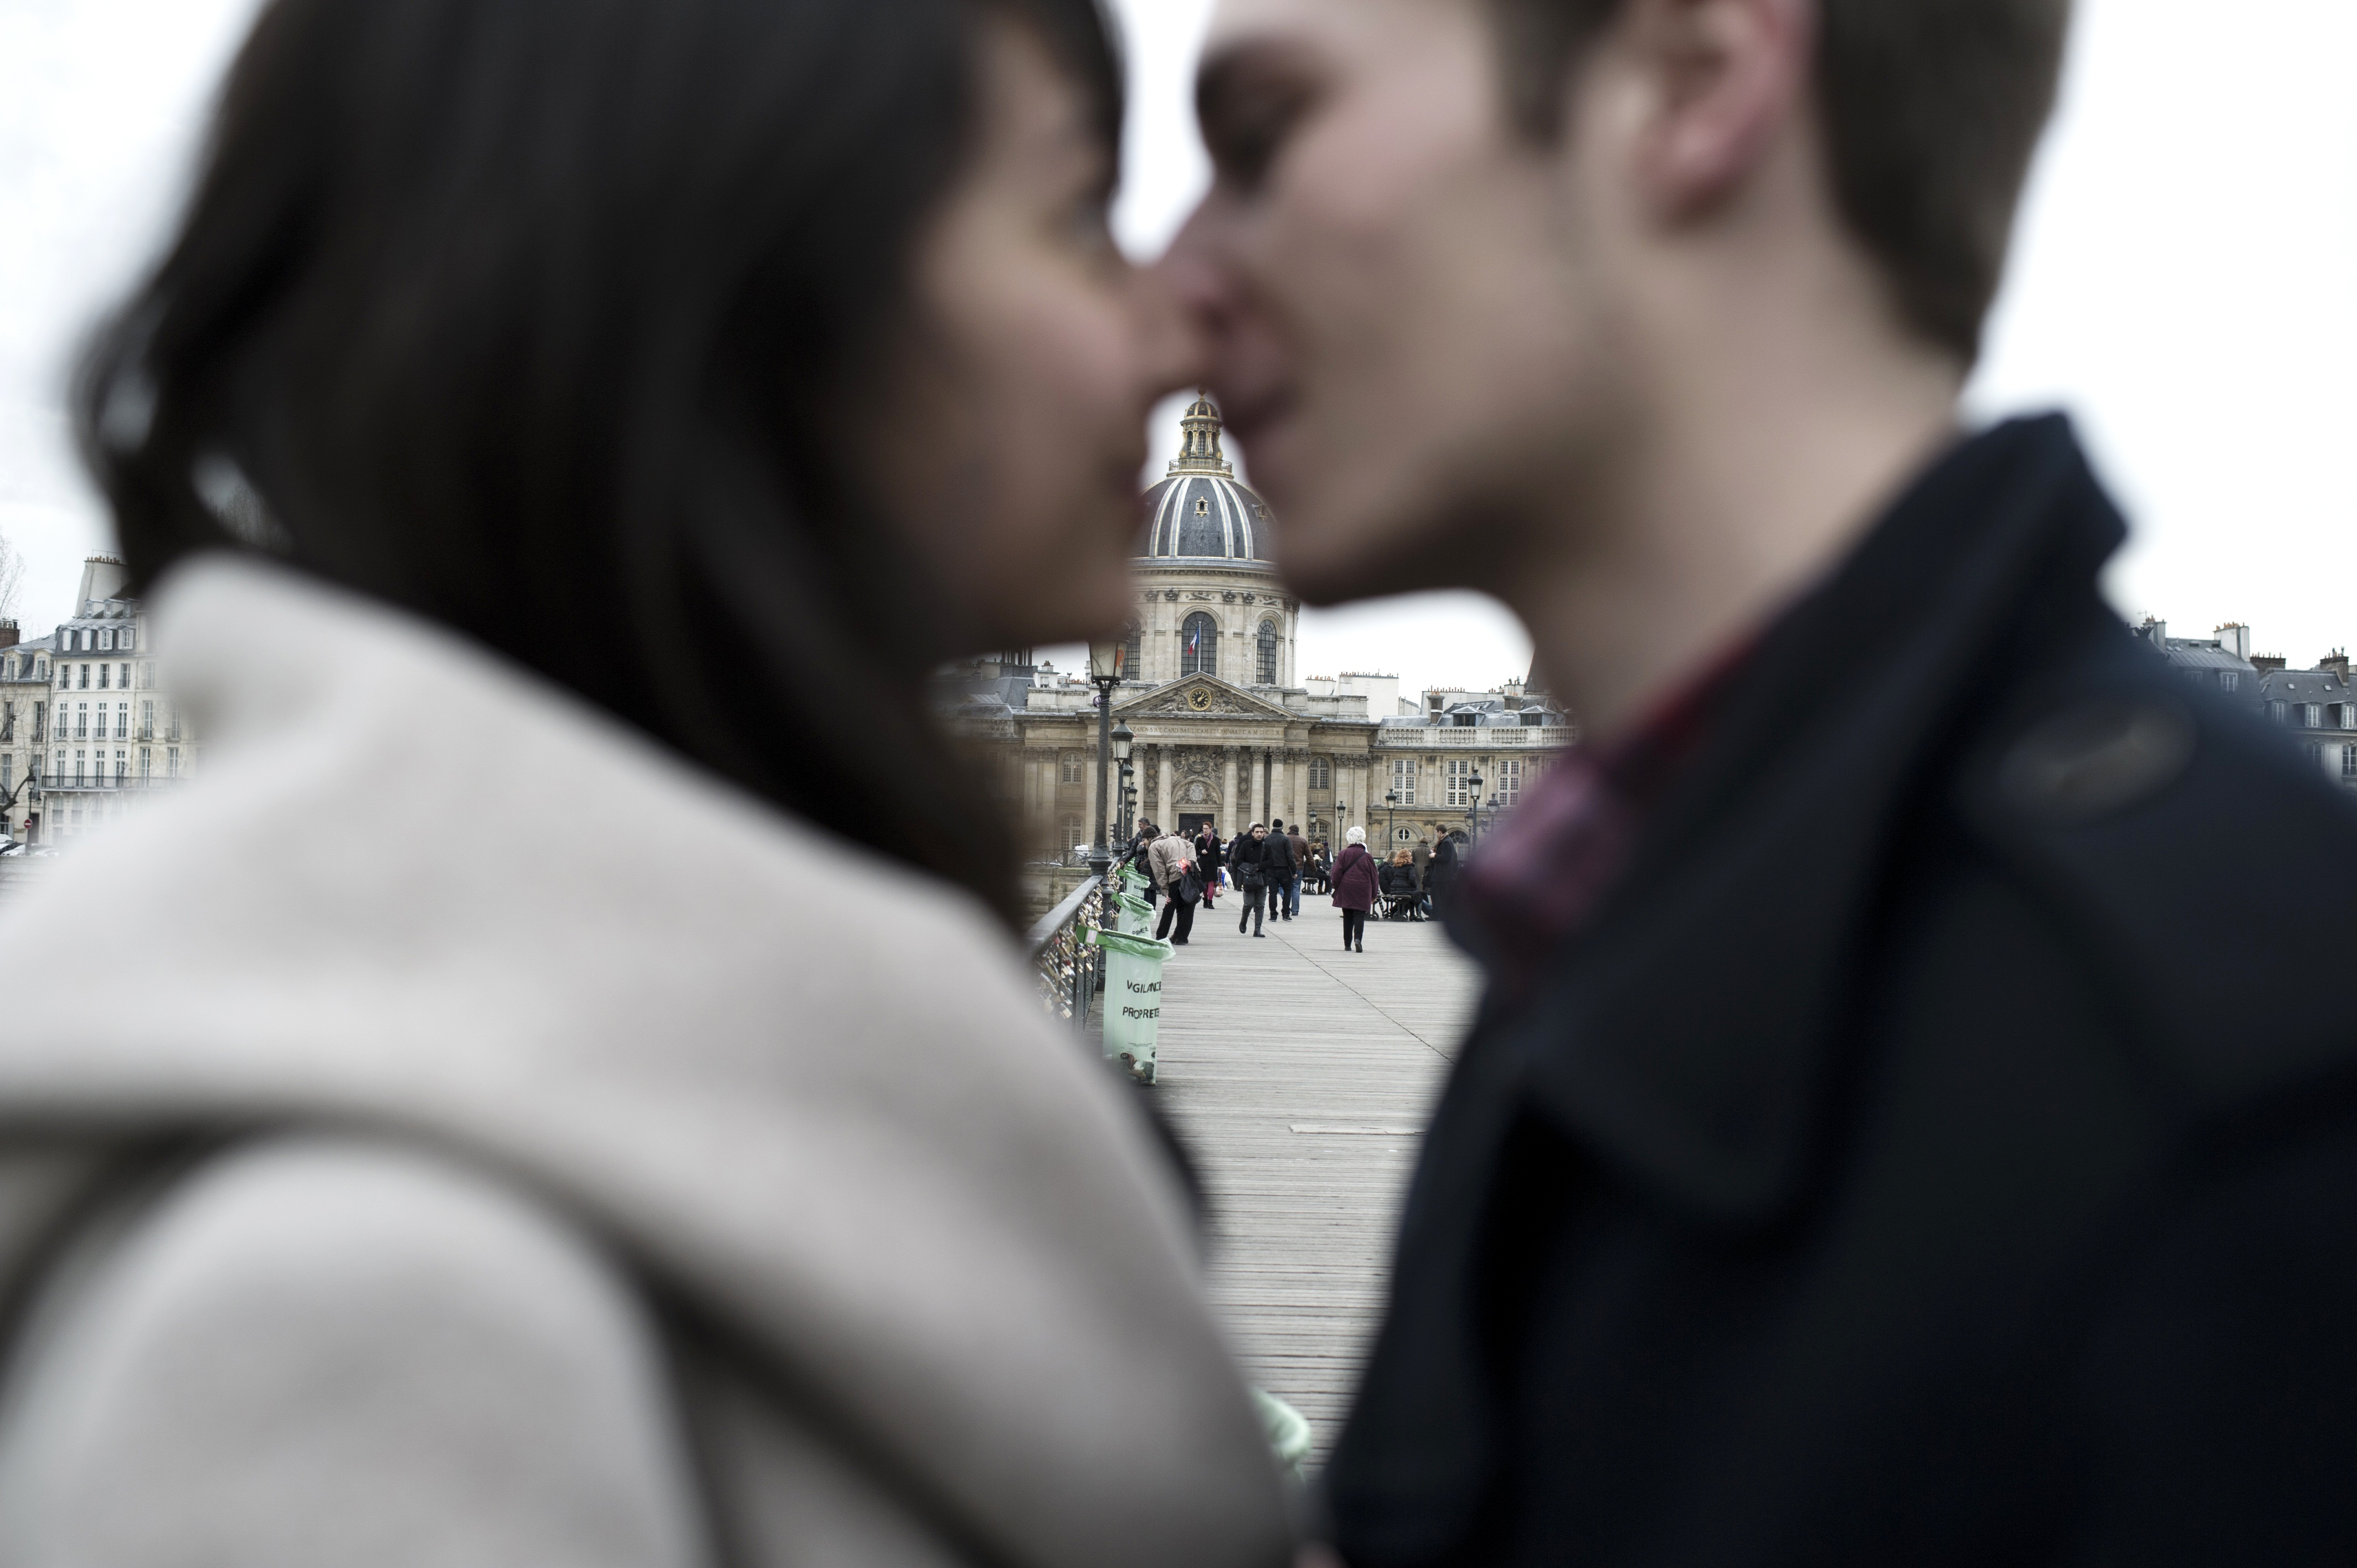 Страстная французская. Фотография пары во время демонстрации. France for Romance.